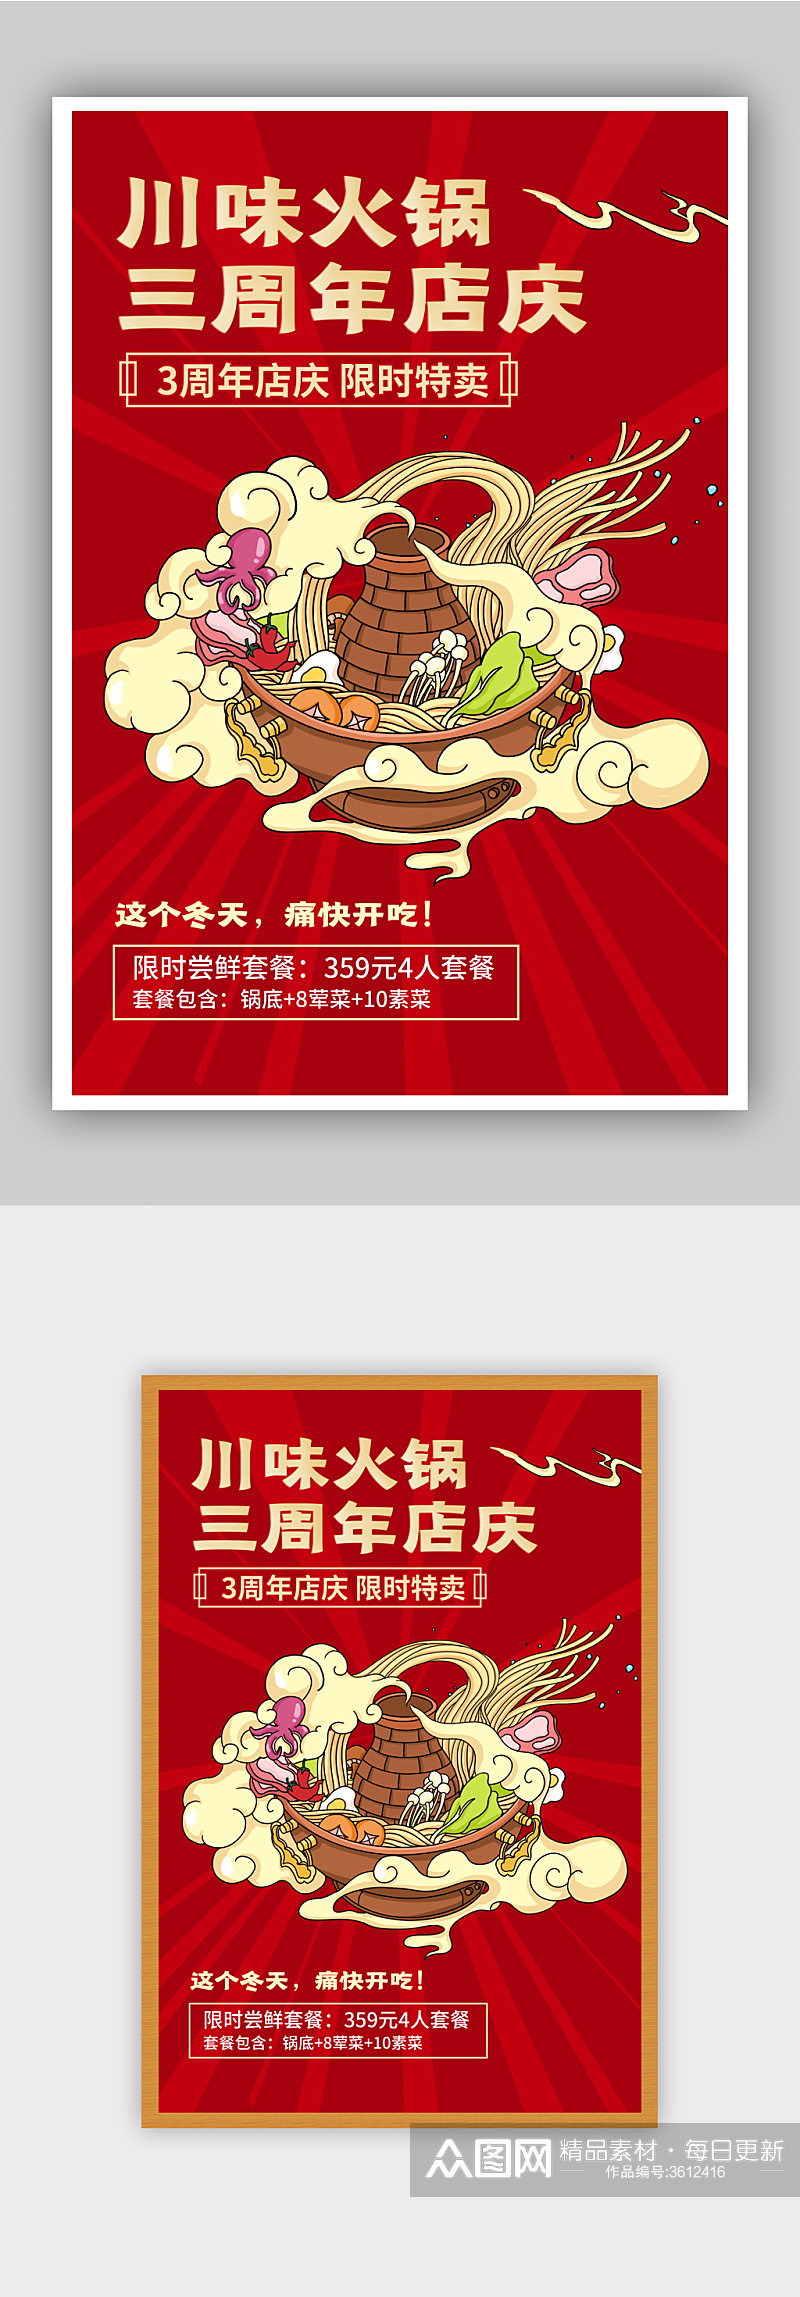 周年庆火锅美食促销海报素材